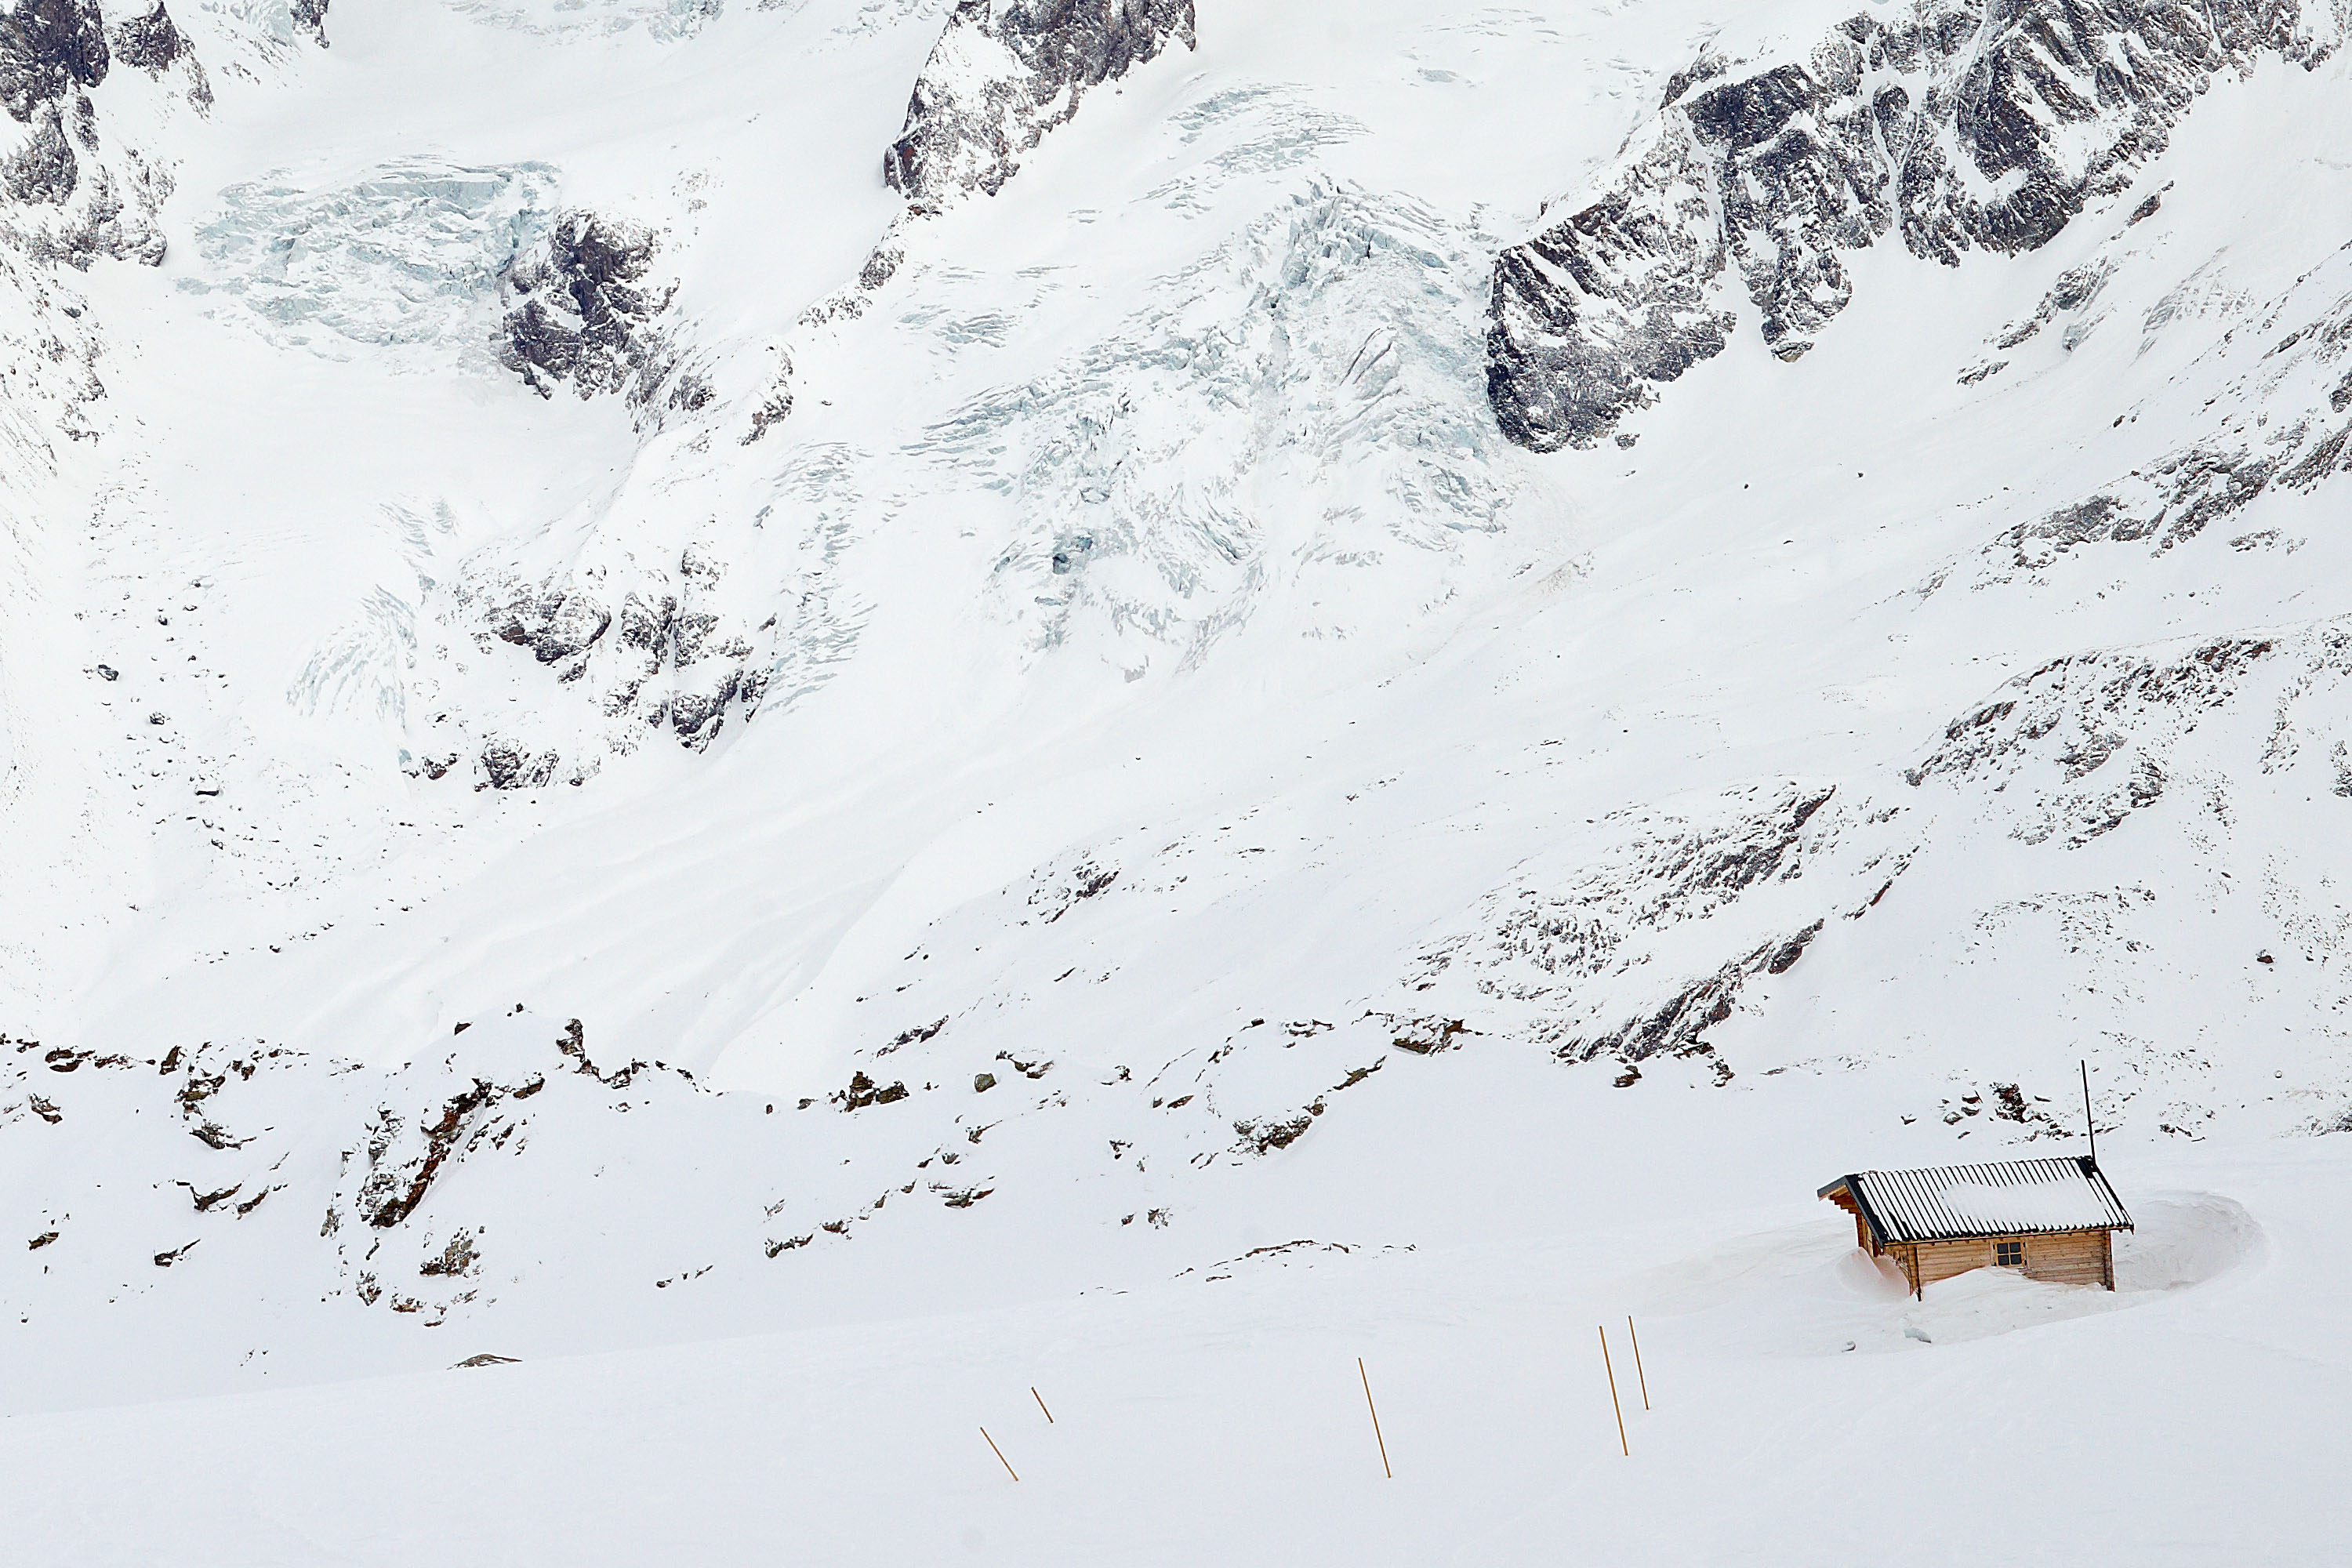 Alpen I © Ralph Rainer Steffens